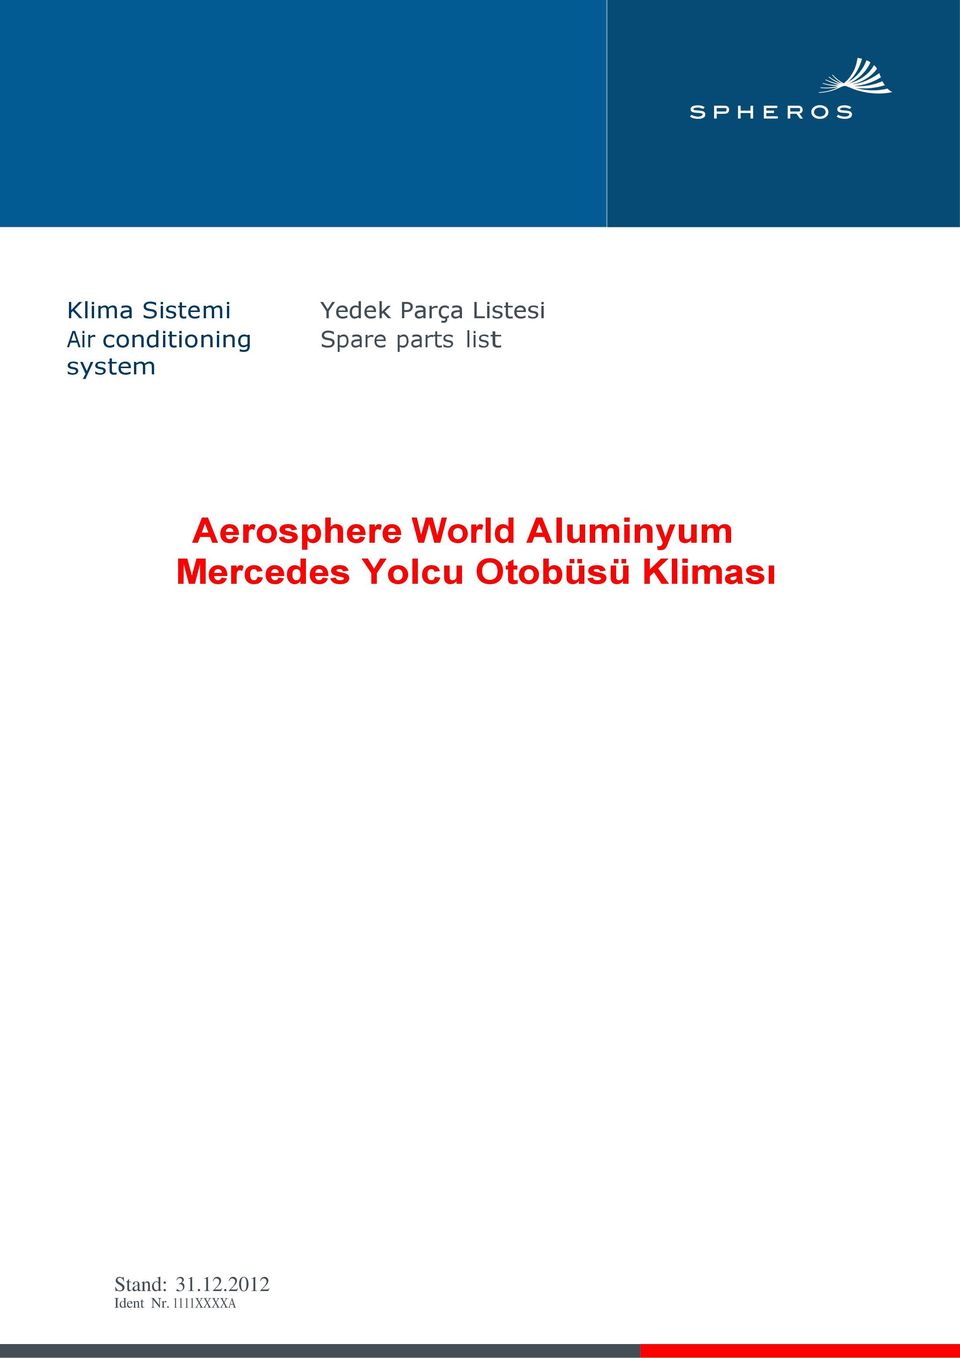 Aerosphere World Aluminyum Mercedes Yolcu